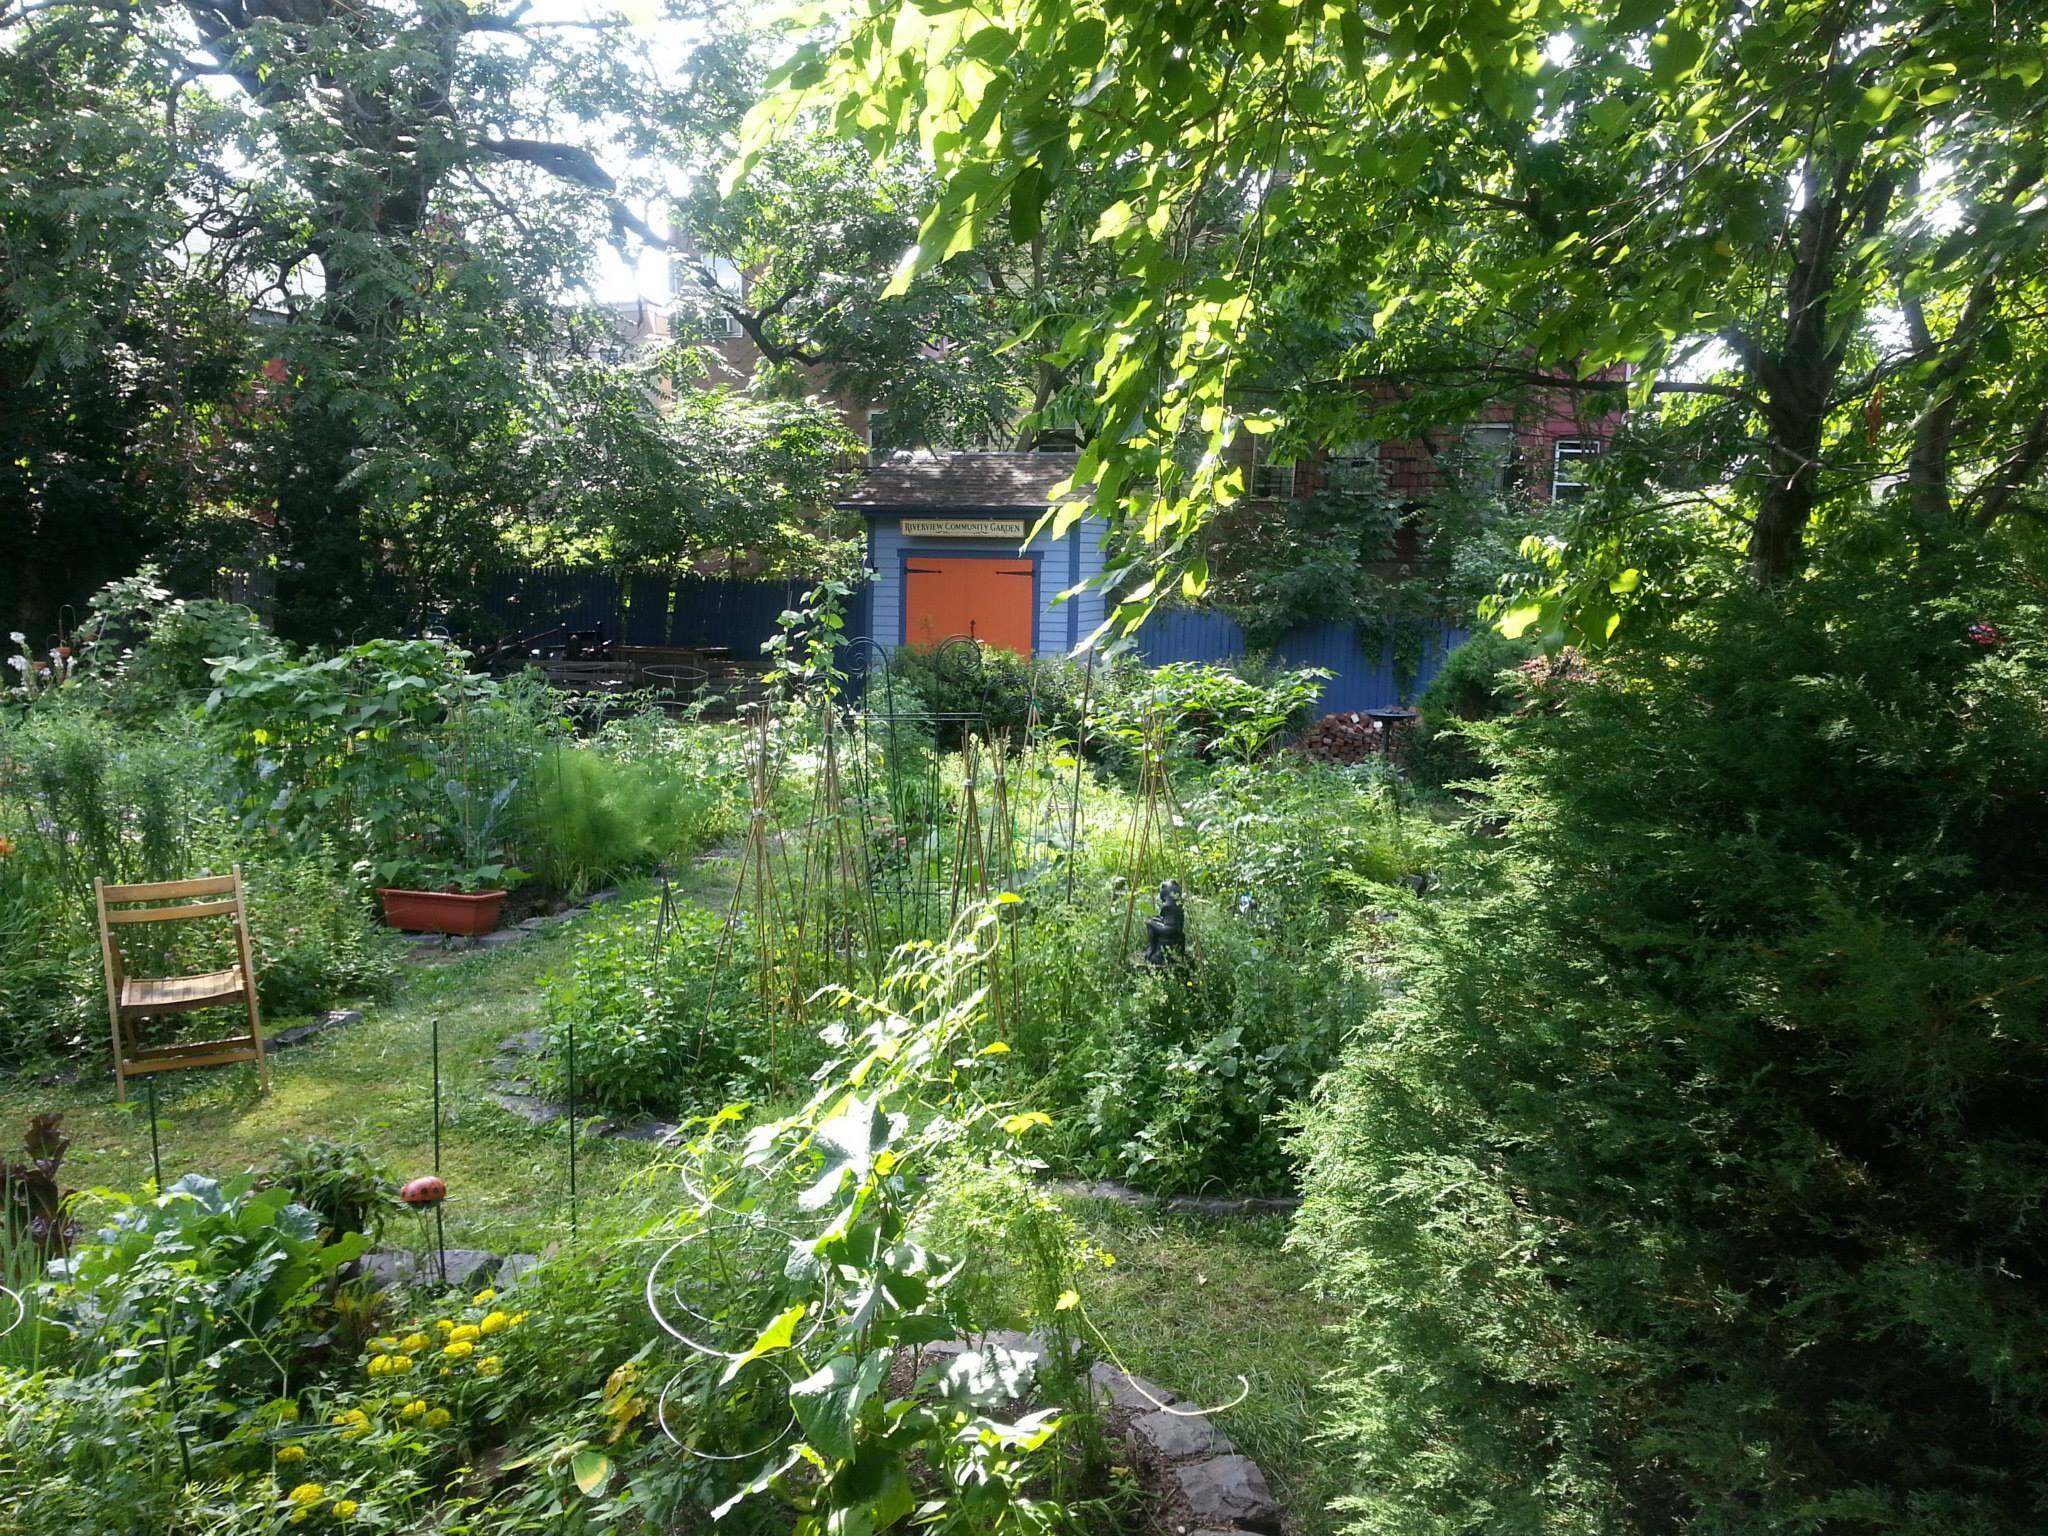 The garden in summer